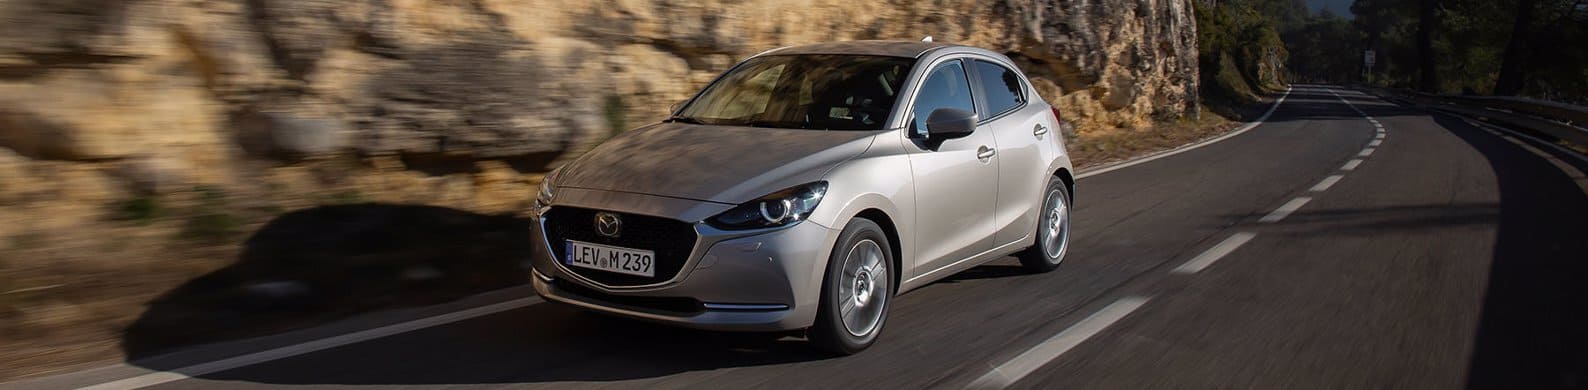 Renting Mazda Hybrid